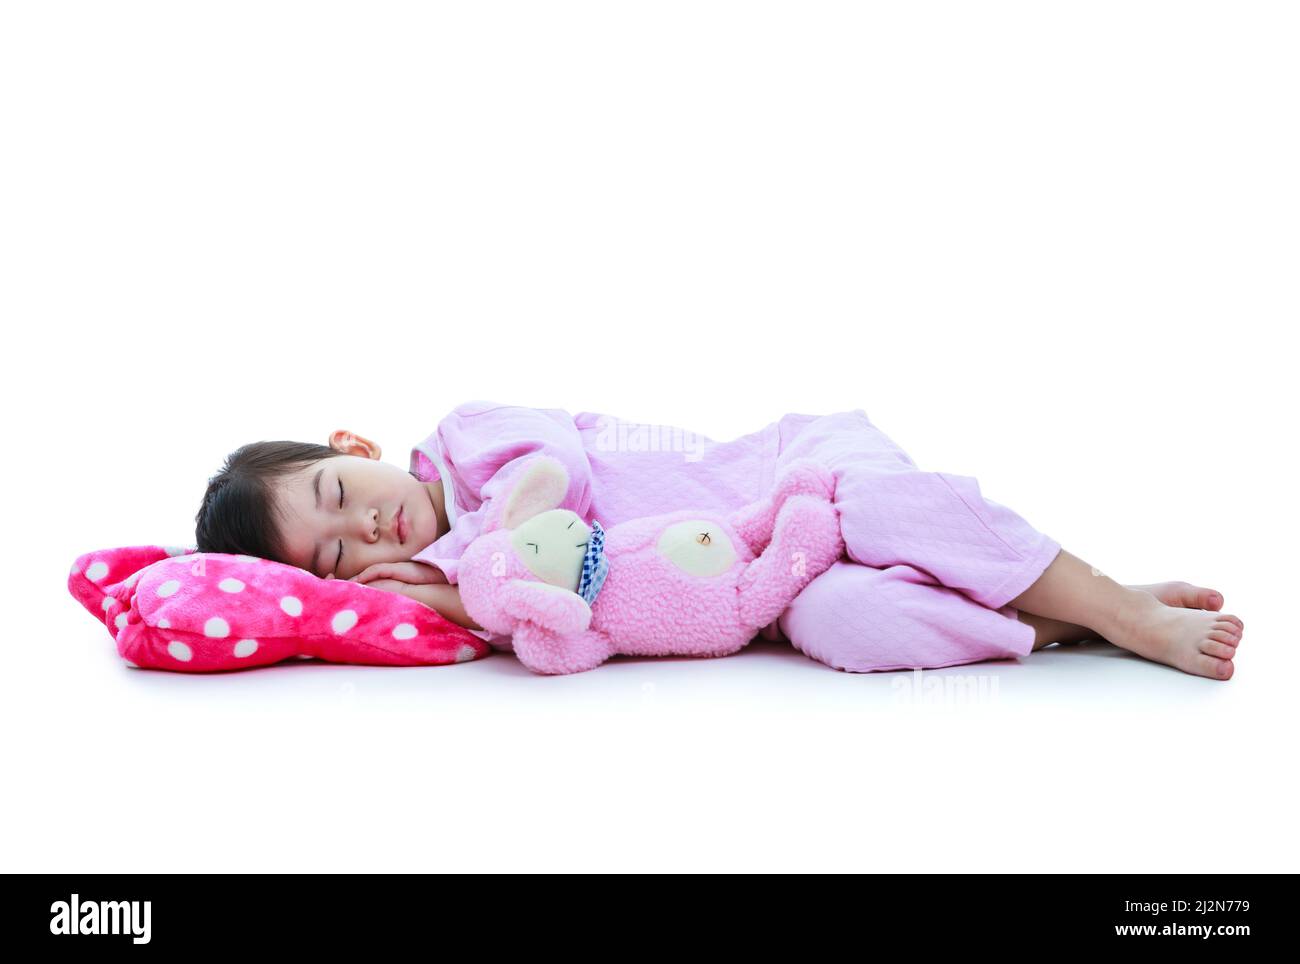 Ganzkörper. Gesundes Kinderkonzept. Asiatisches Kind schläft friedlich. Liebenswert Mädchen in rosa Schlafanzug unter ein Nickerchen. Isoliert auf weißem Hintergrund. Stockfoto